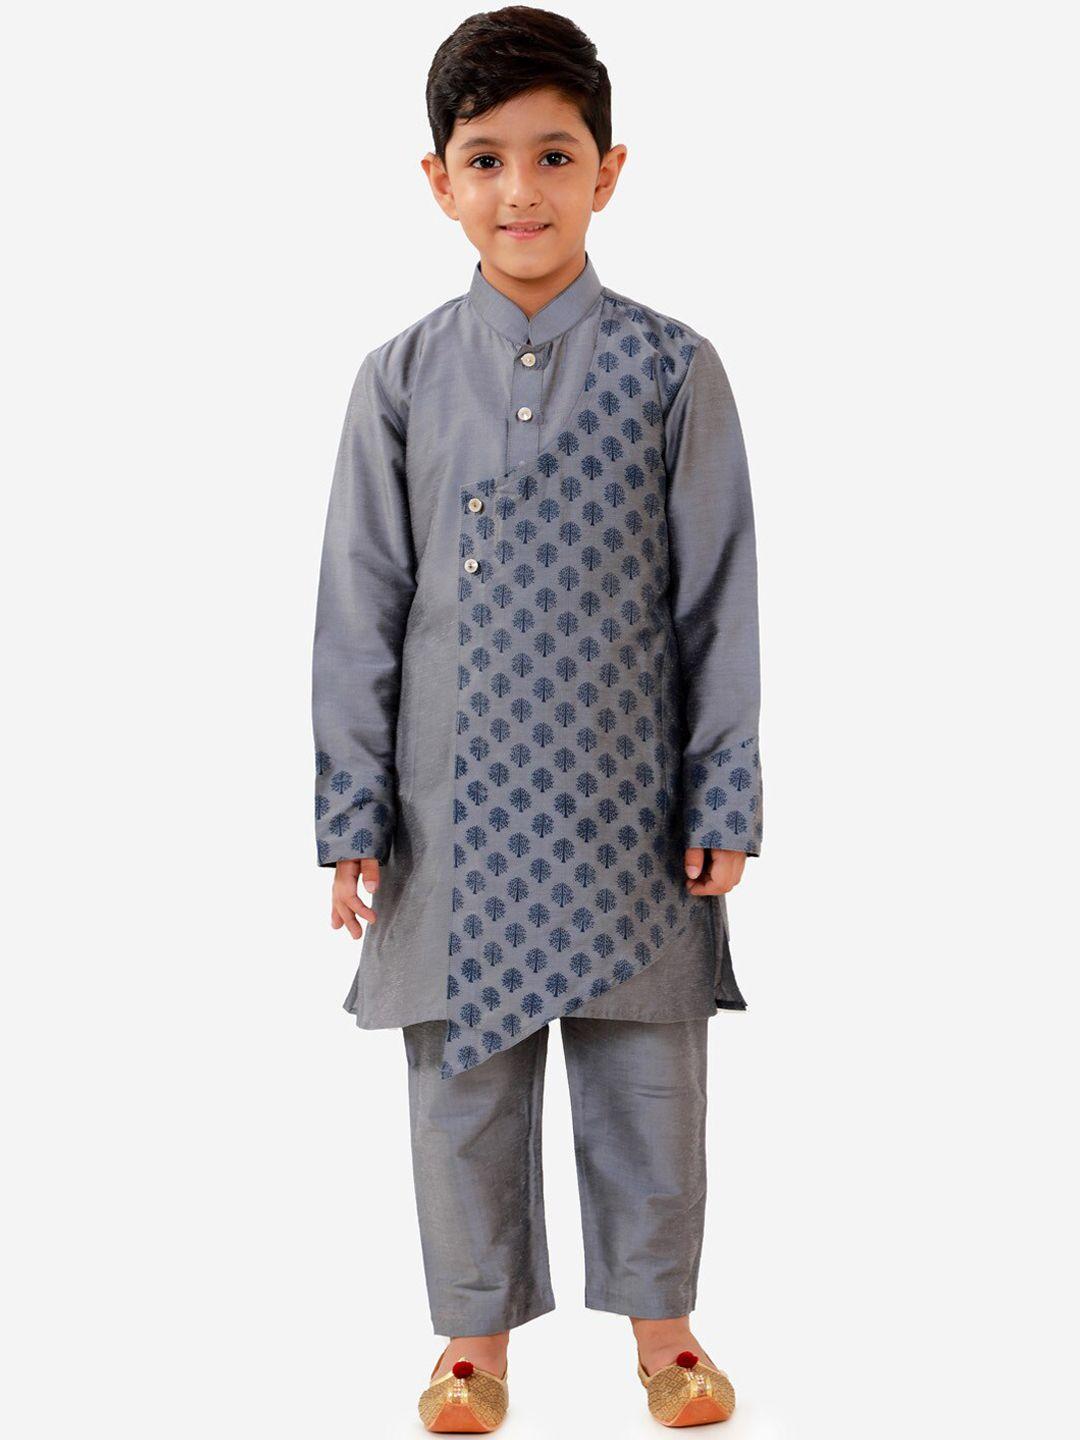 VASTRAMAY Boys Grey Ethnic Motifs Printed Regular Kurta with Pyjamas